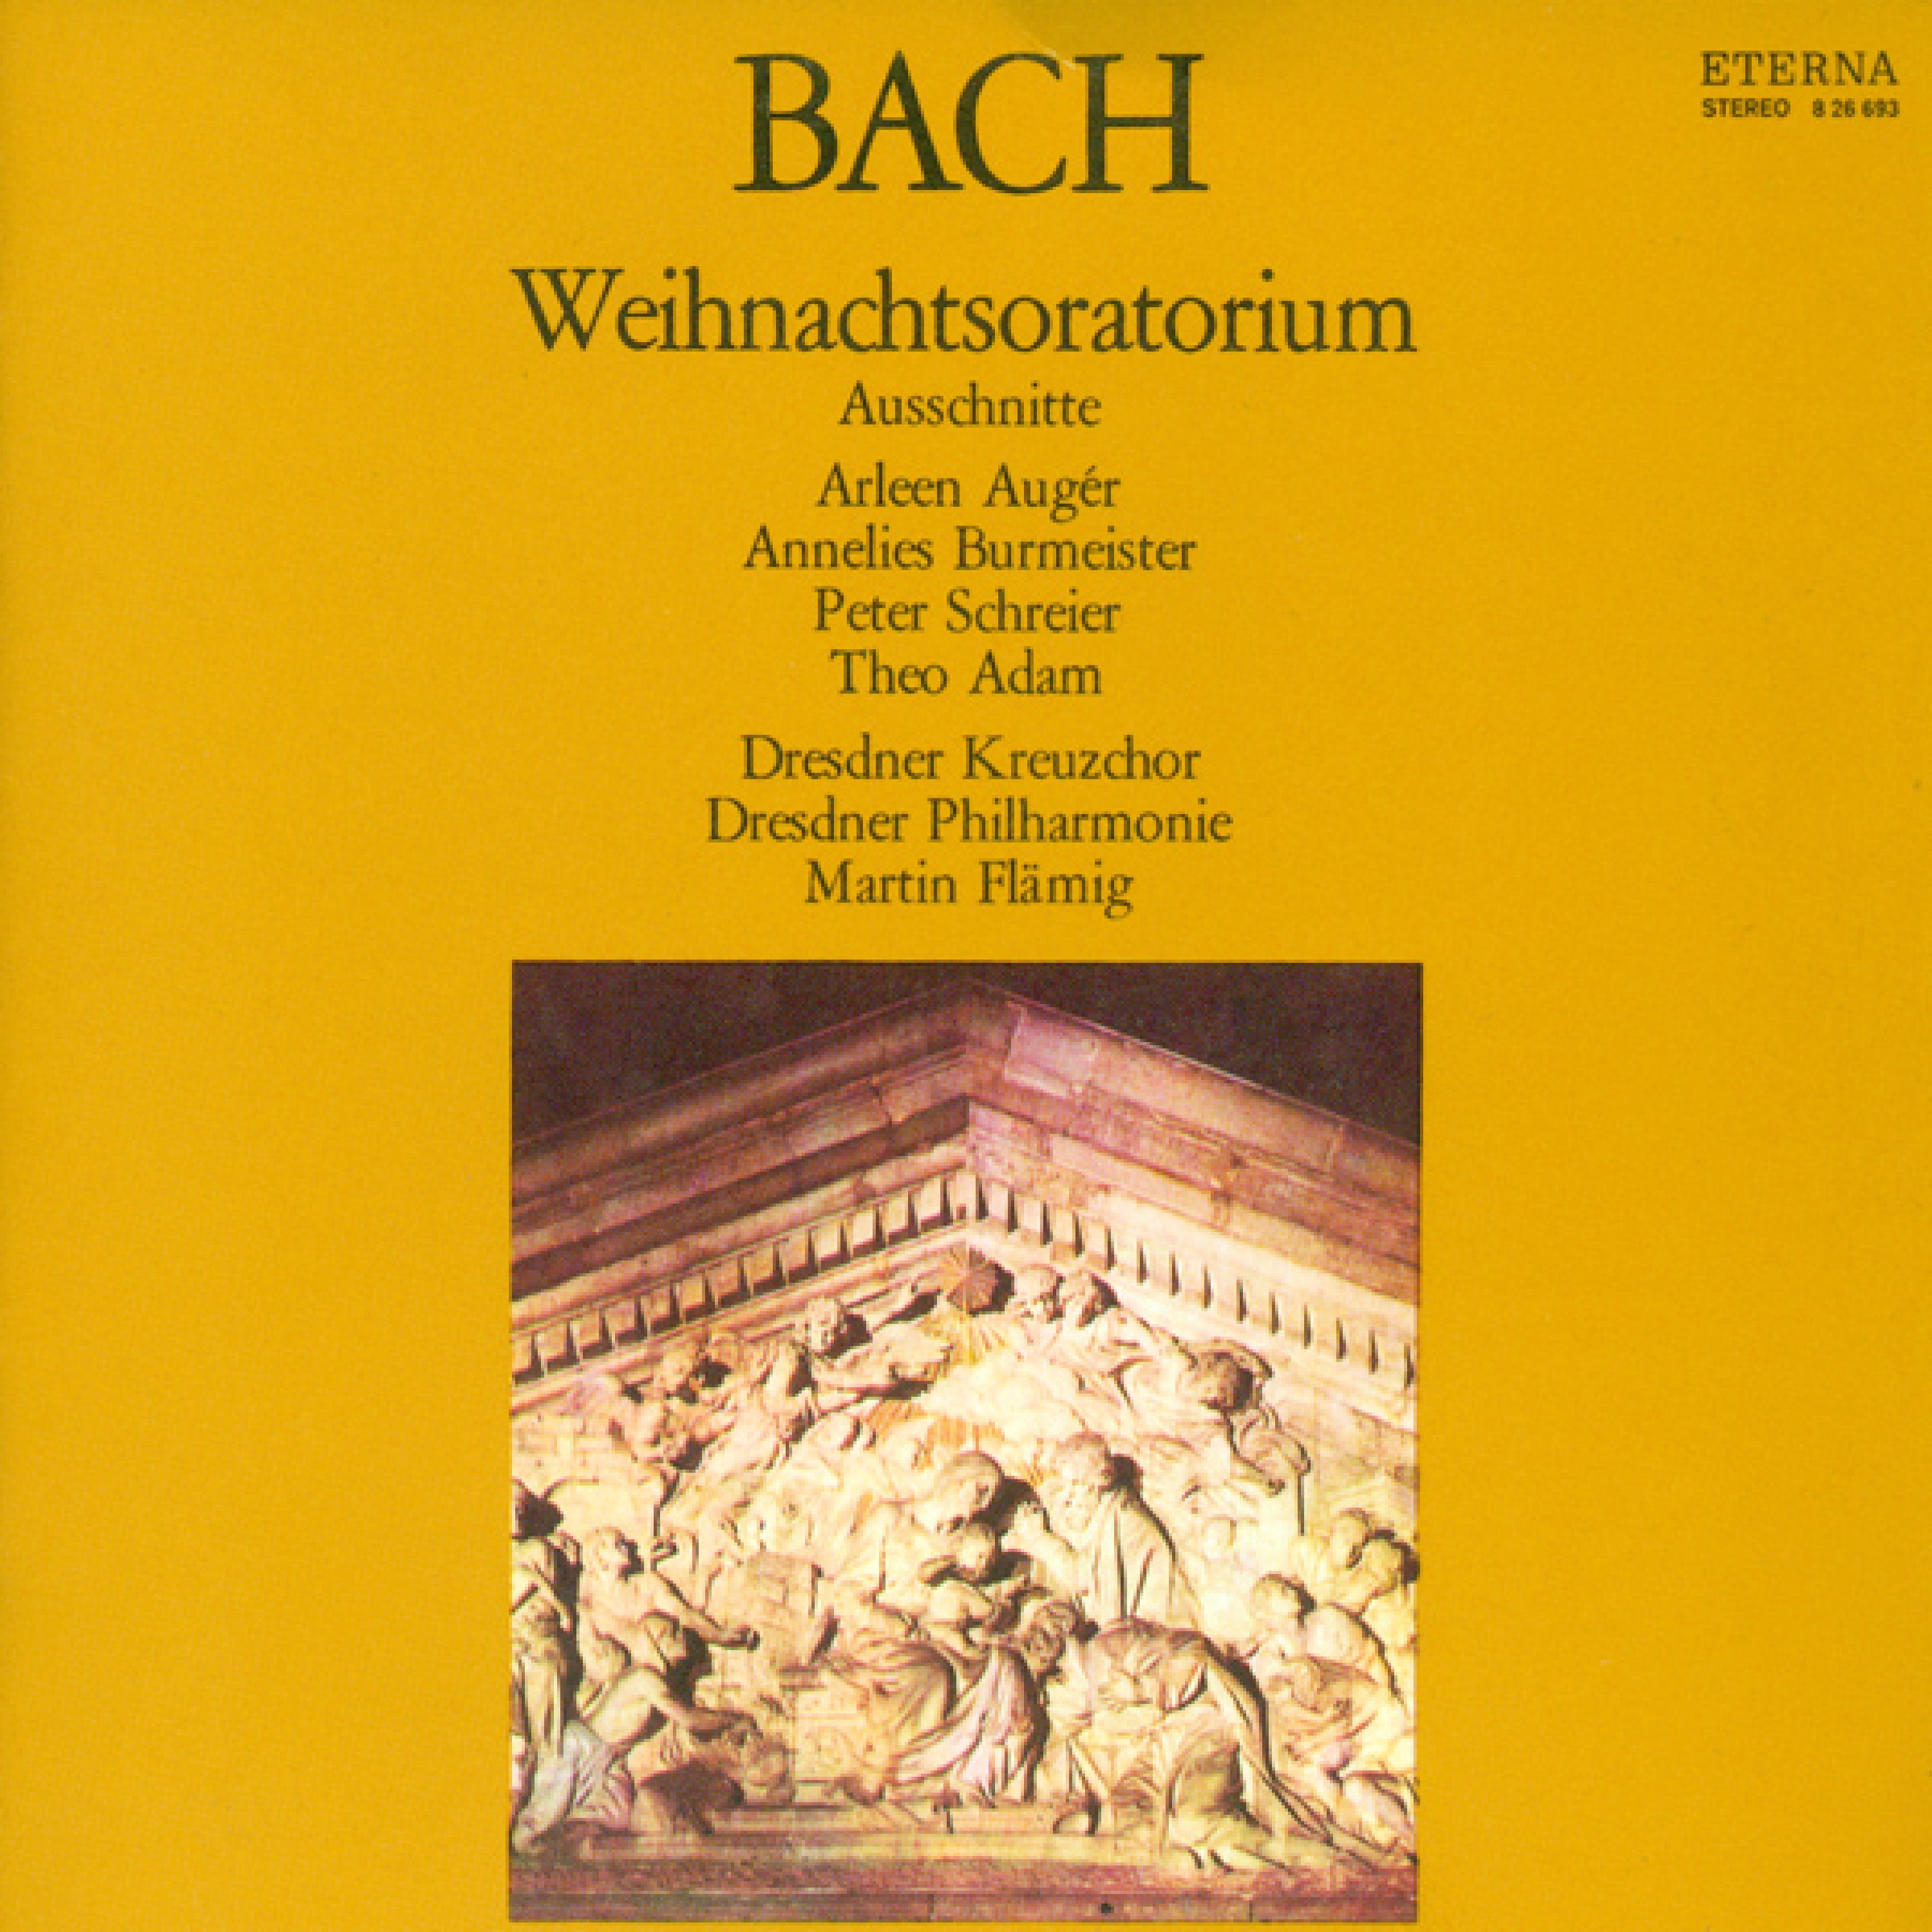 Weihnachtsoratorium, BWV 248: Teil I  " Bereite dich, Zion, mit z rtlichen Trieben"